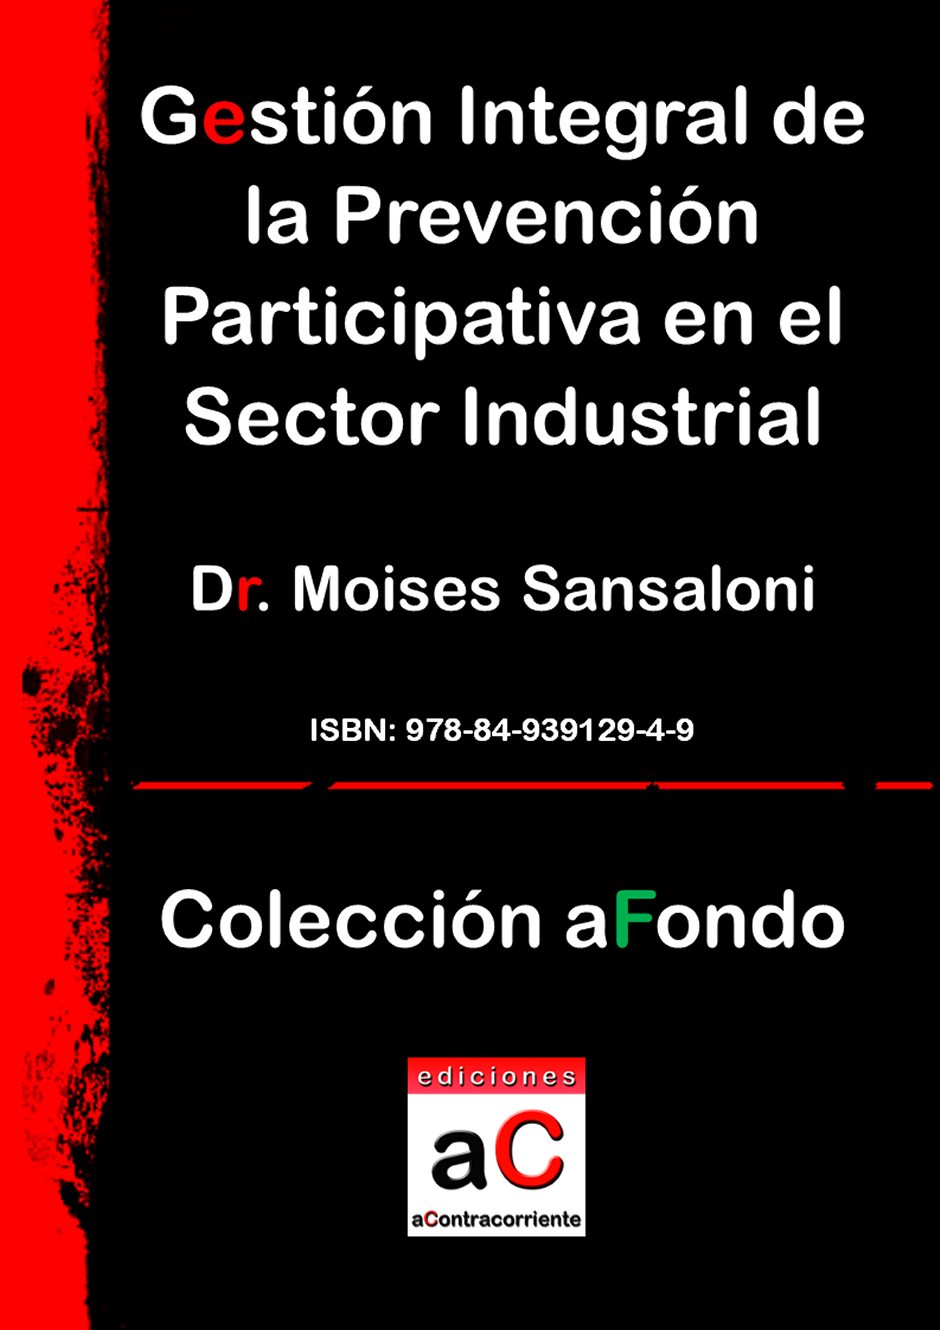 Gestión integral de la prevención participativa en el sector industrial, Ediciones aContracorriente